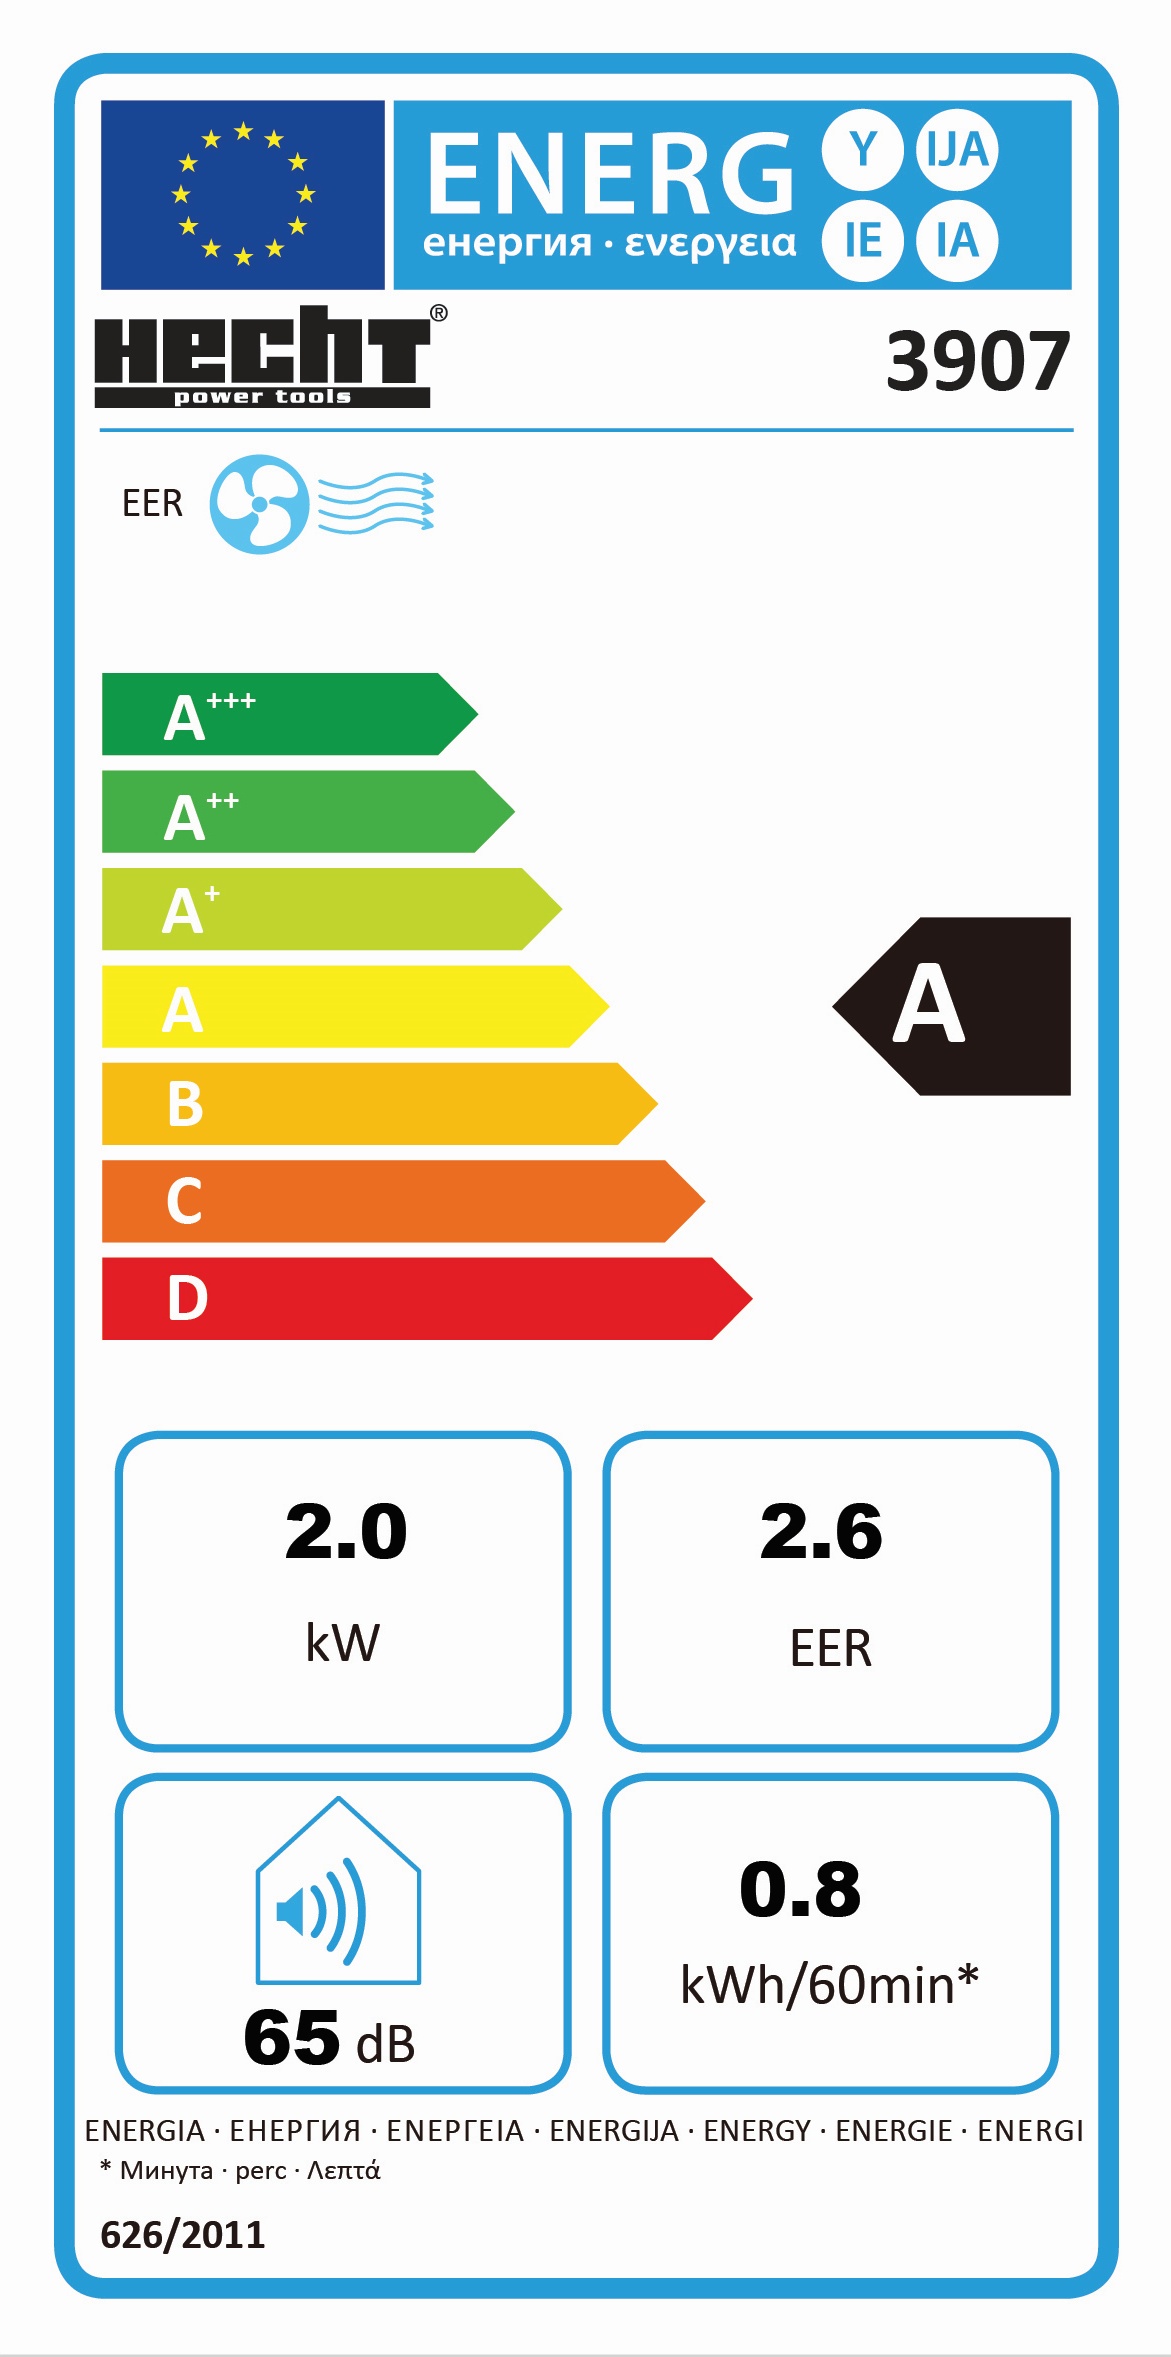 Klimatyzator elektryczny - HECHT 3907 | Wentylatory i klimatyzacje |  Warsztat, budowa | HECHT